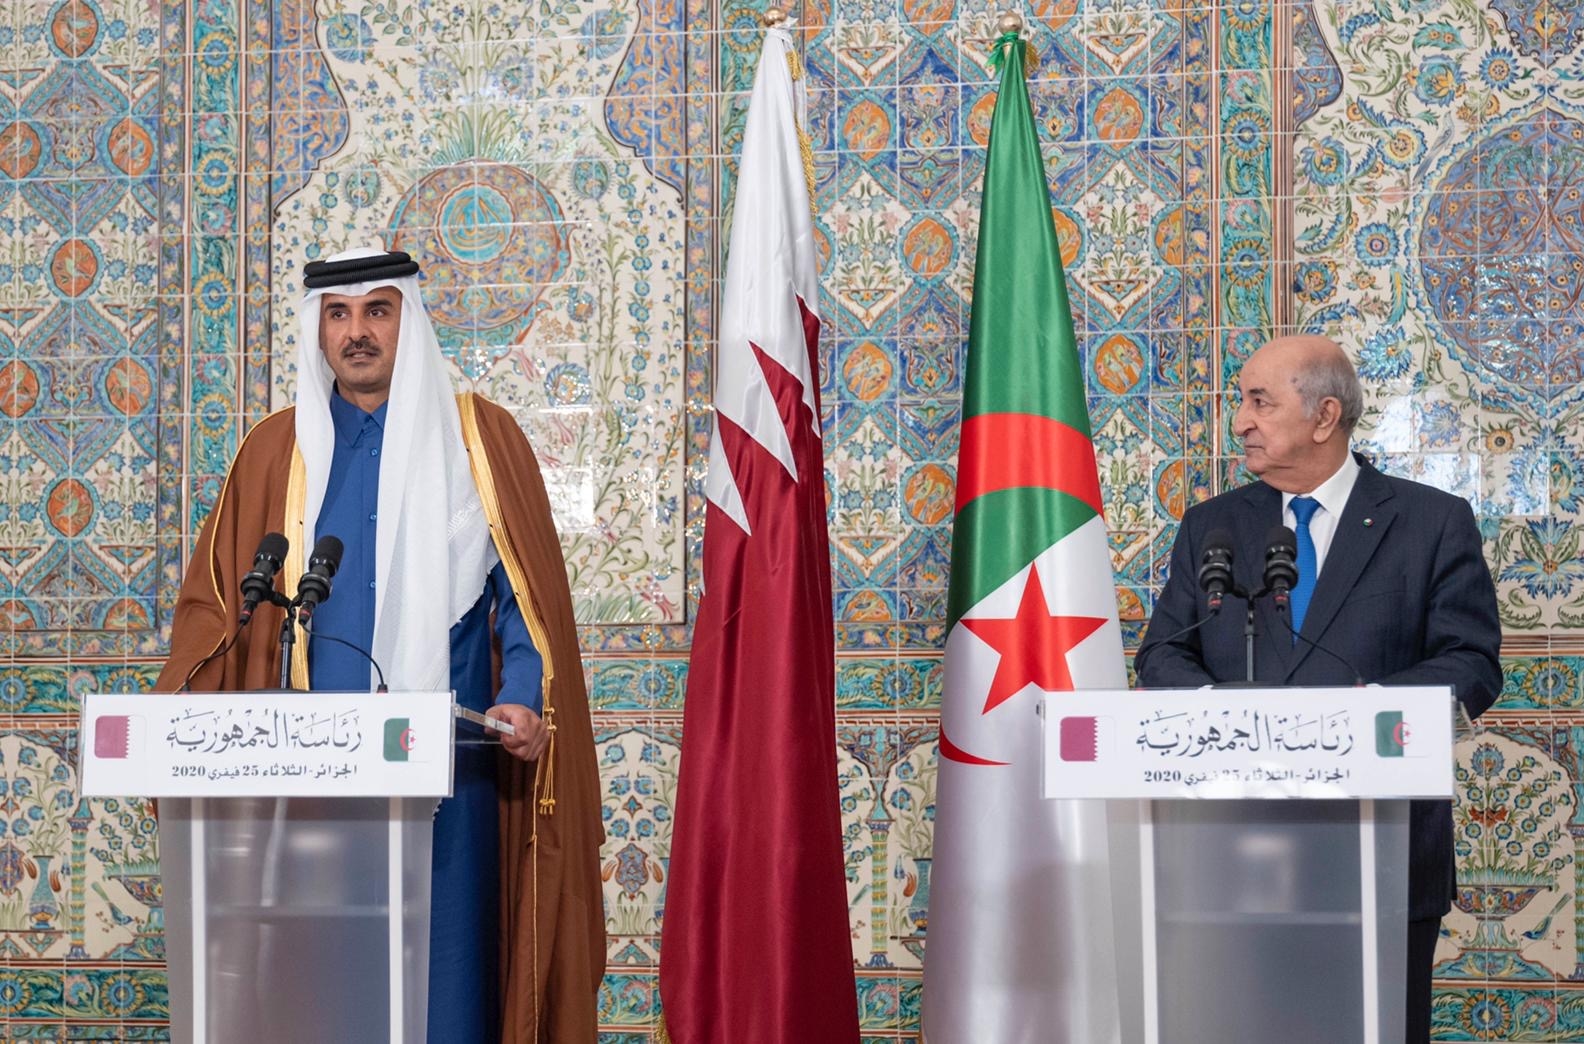 الرئيس الجزائري في قطر برفع مستوى التبادل التجاري